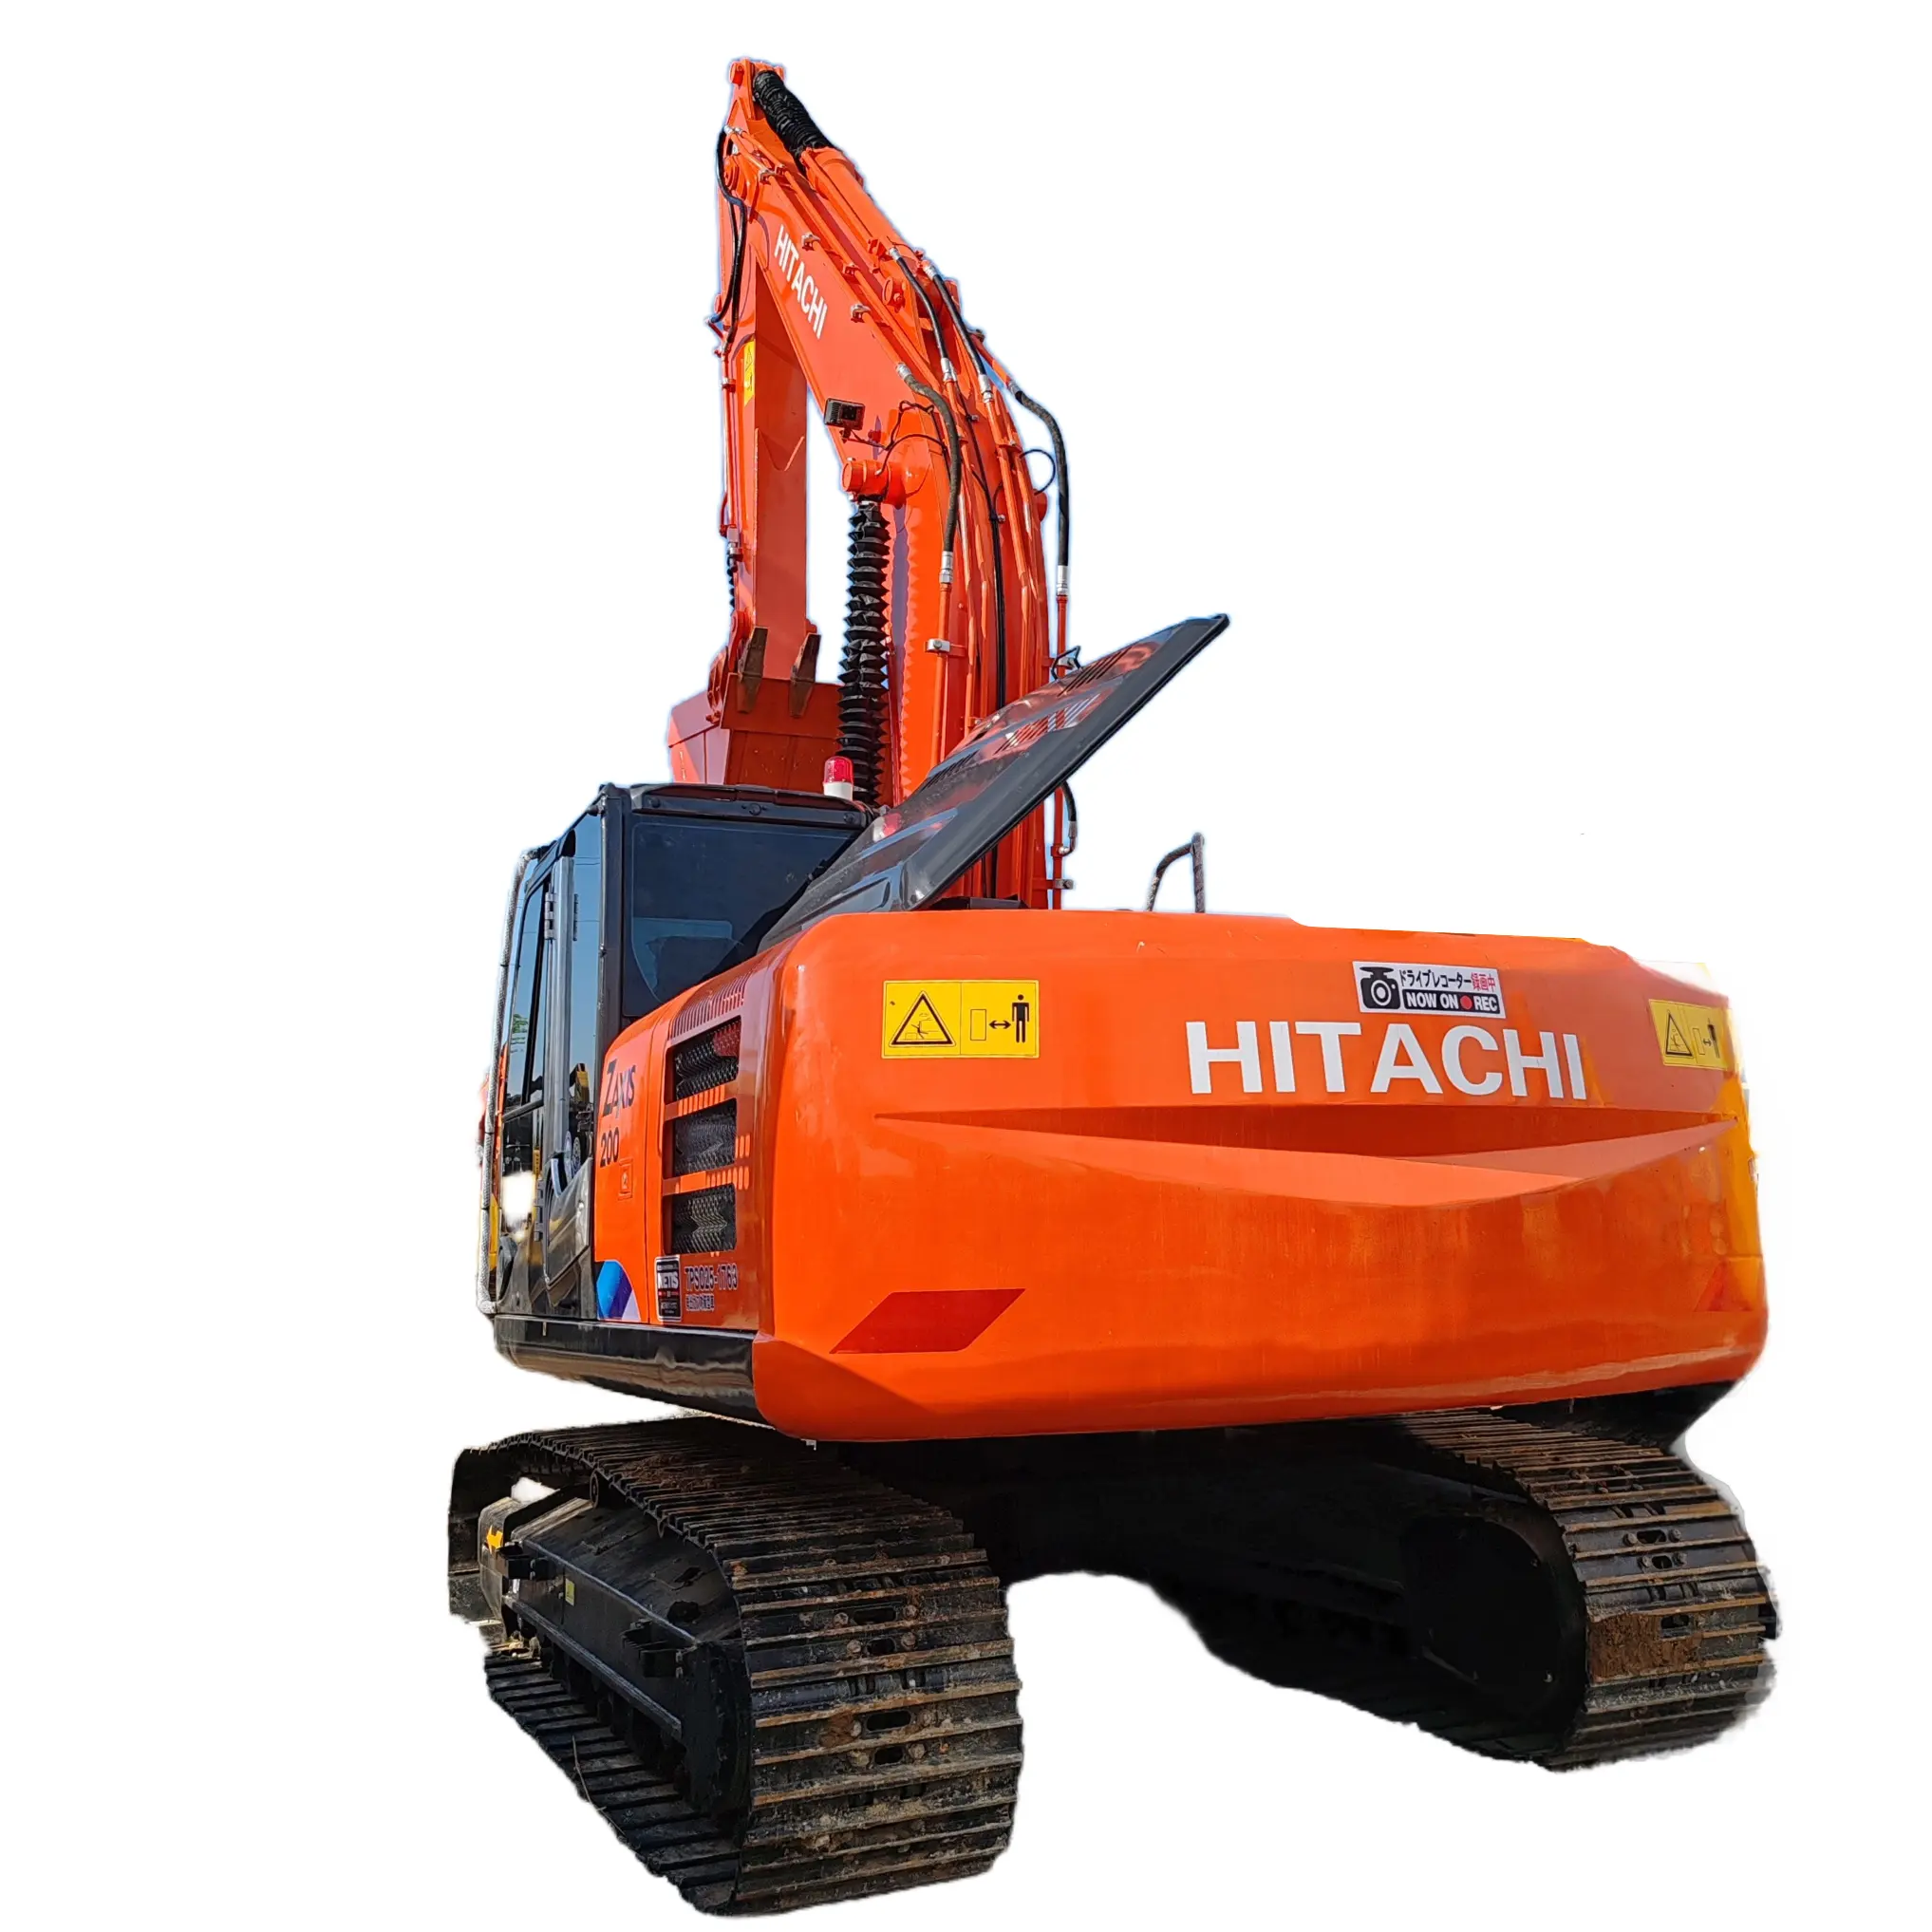 Japan Original Gebraucht Hitachi Zaxis 200 Bagger Gebraucht gräber Hitachi Zaxis 200 In gutem Zustand Zum Verkauf